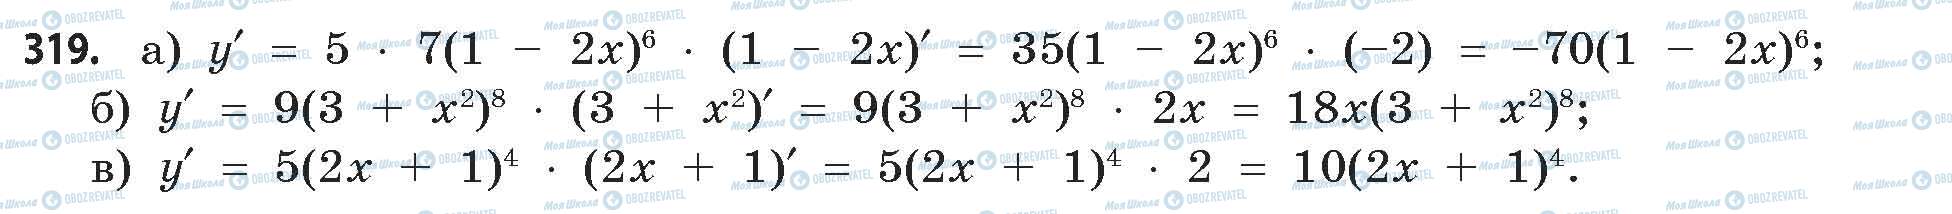 ГДЗ Математика 11 класс страница 319